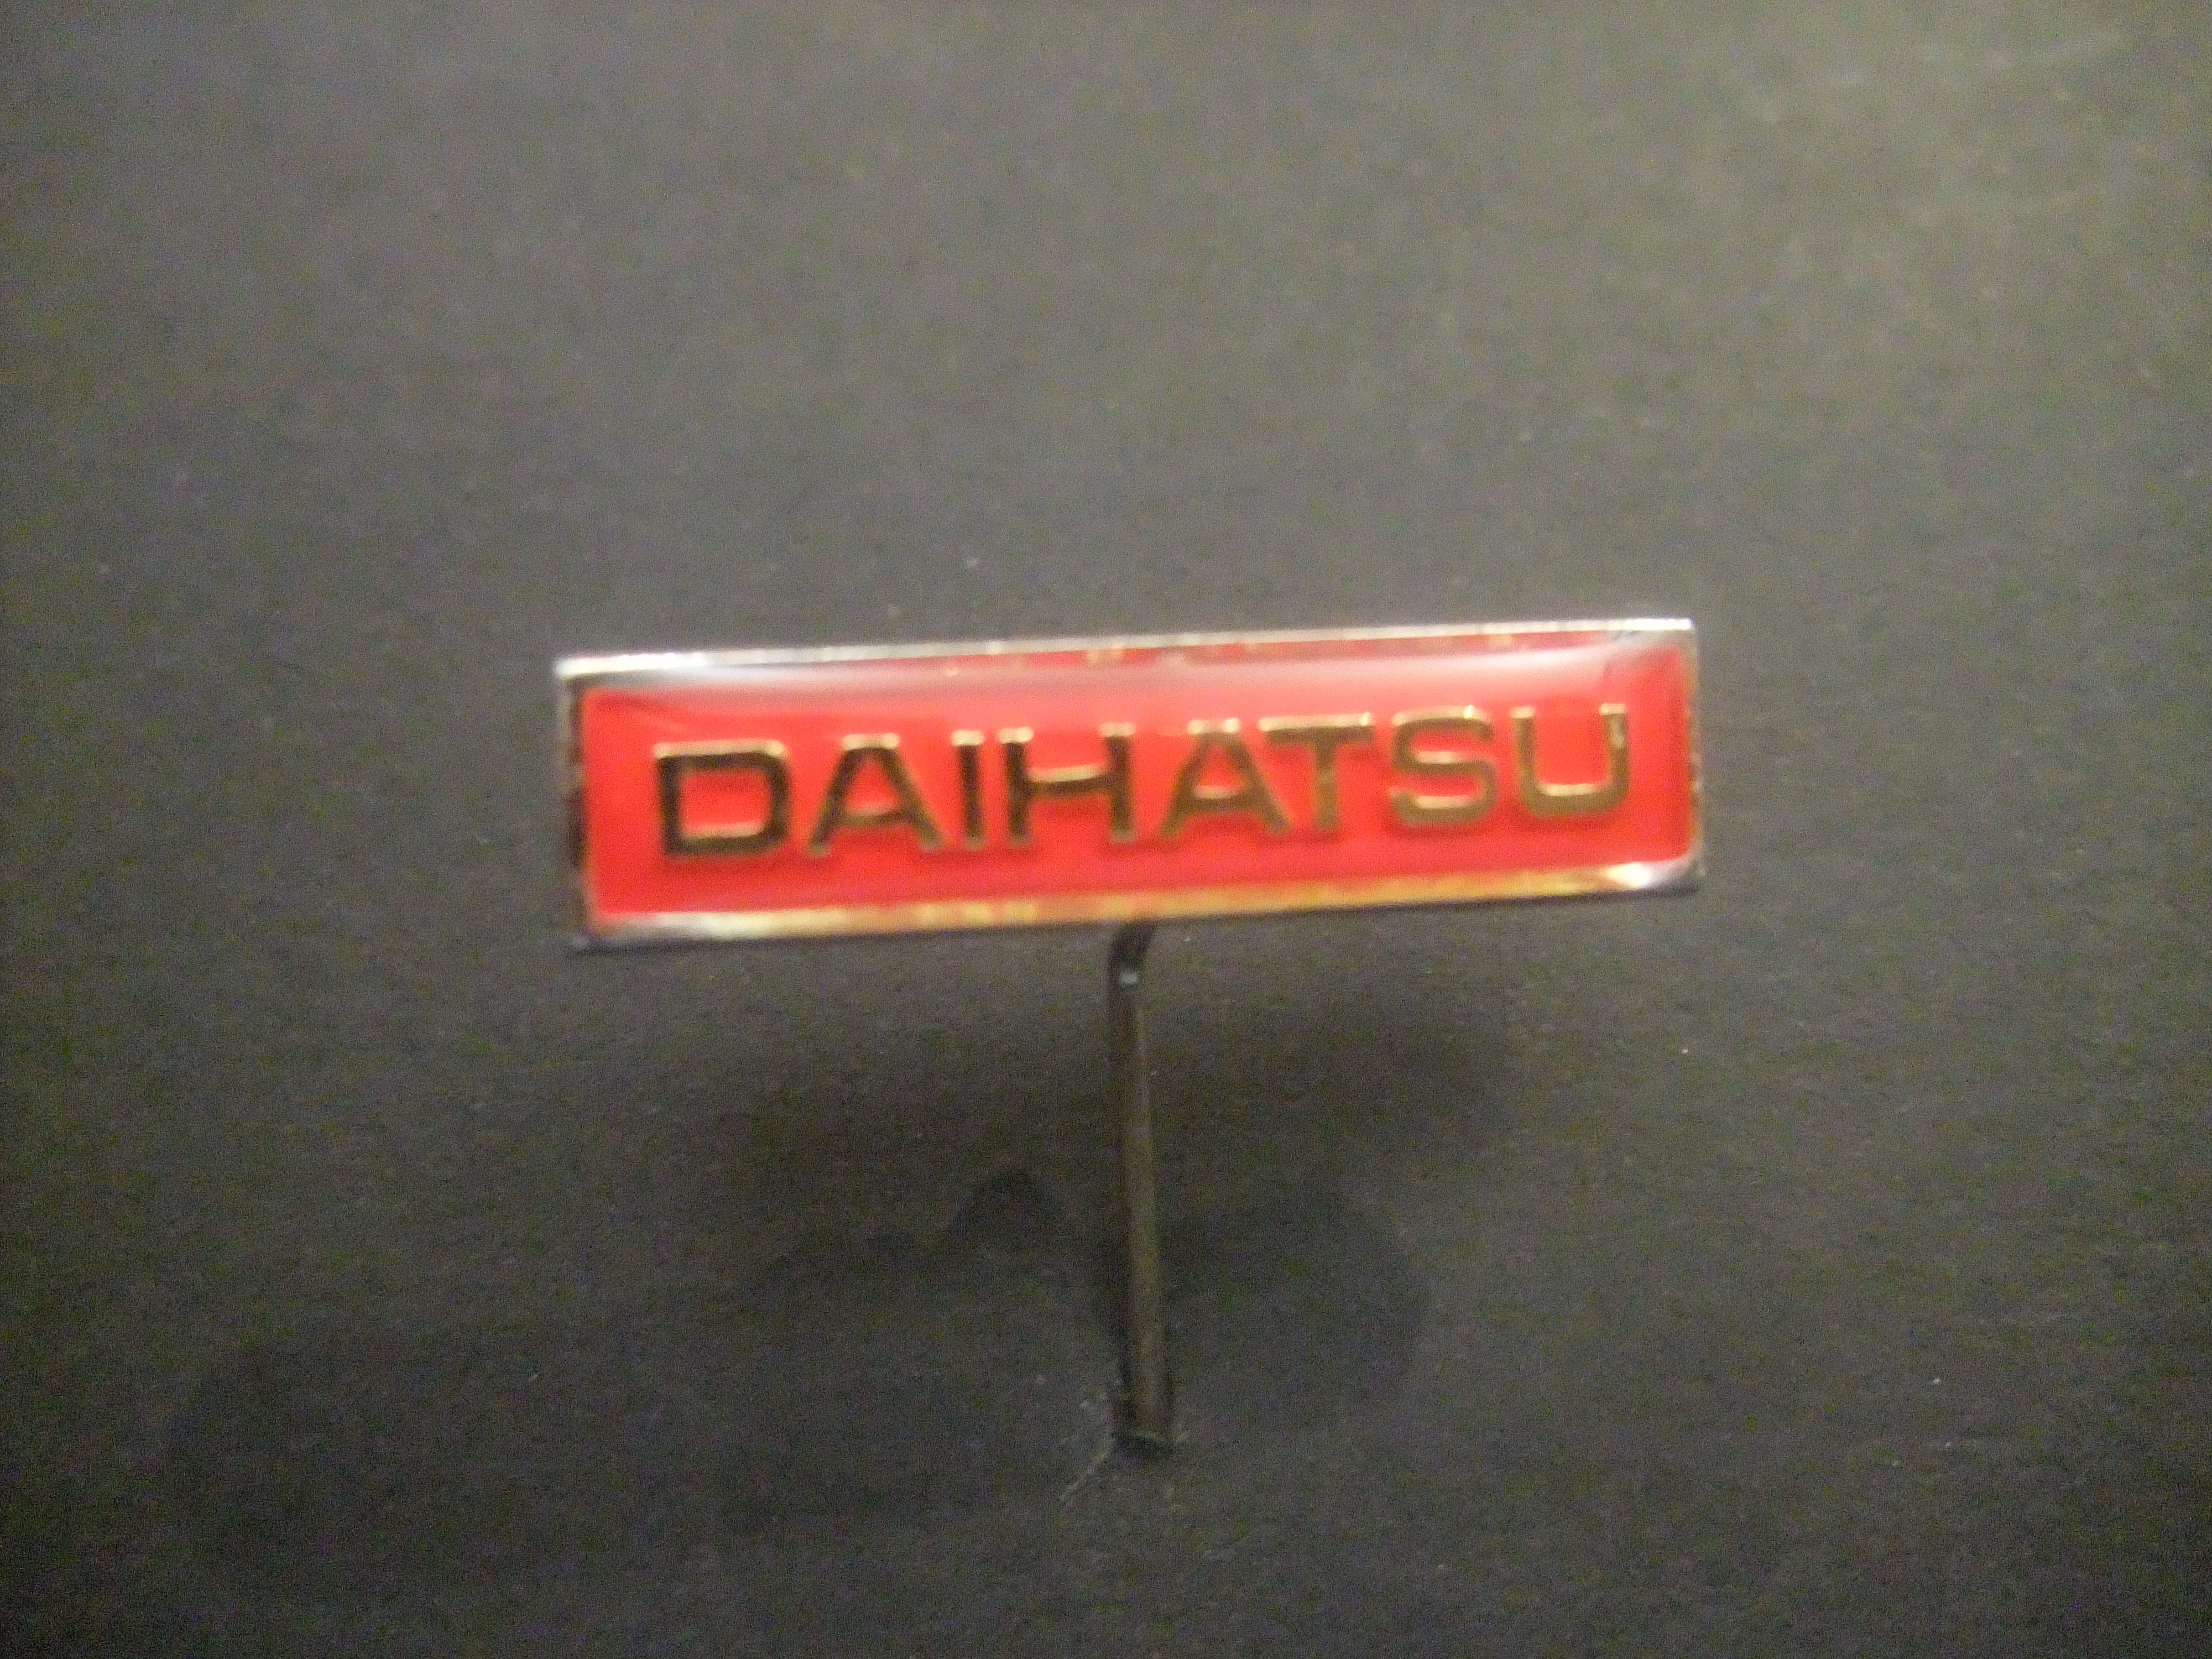 Daihatsu Japans automerk langwerpig logo